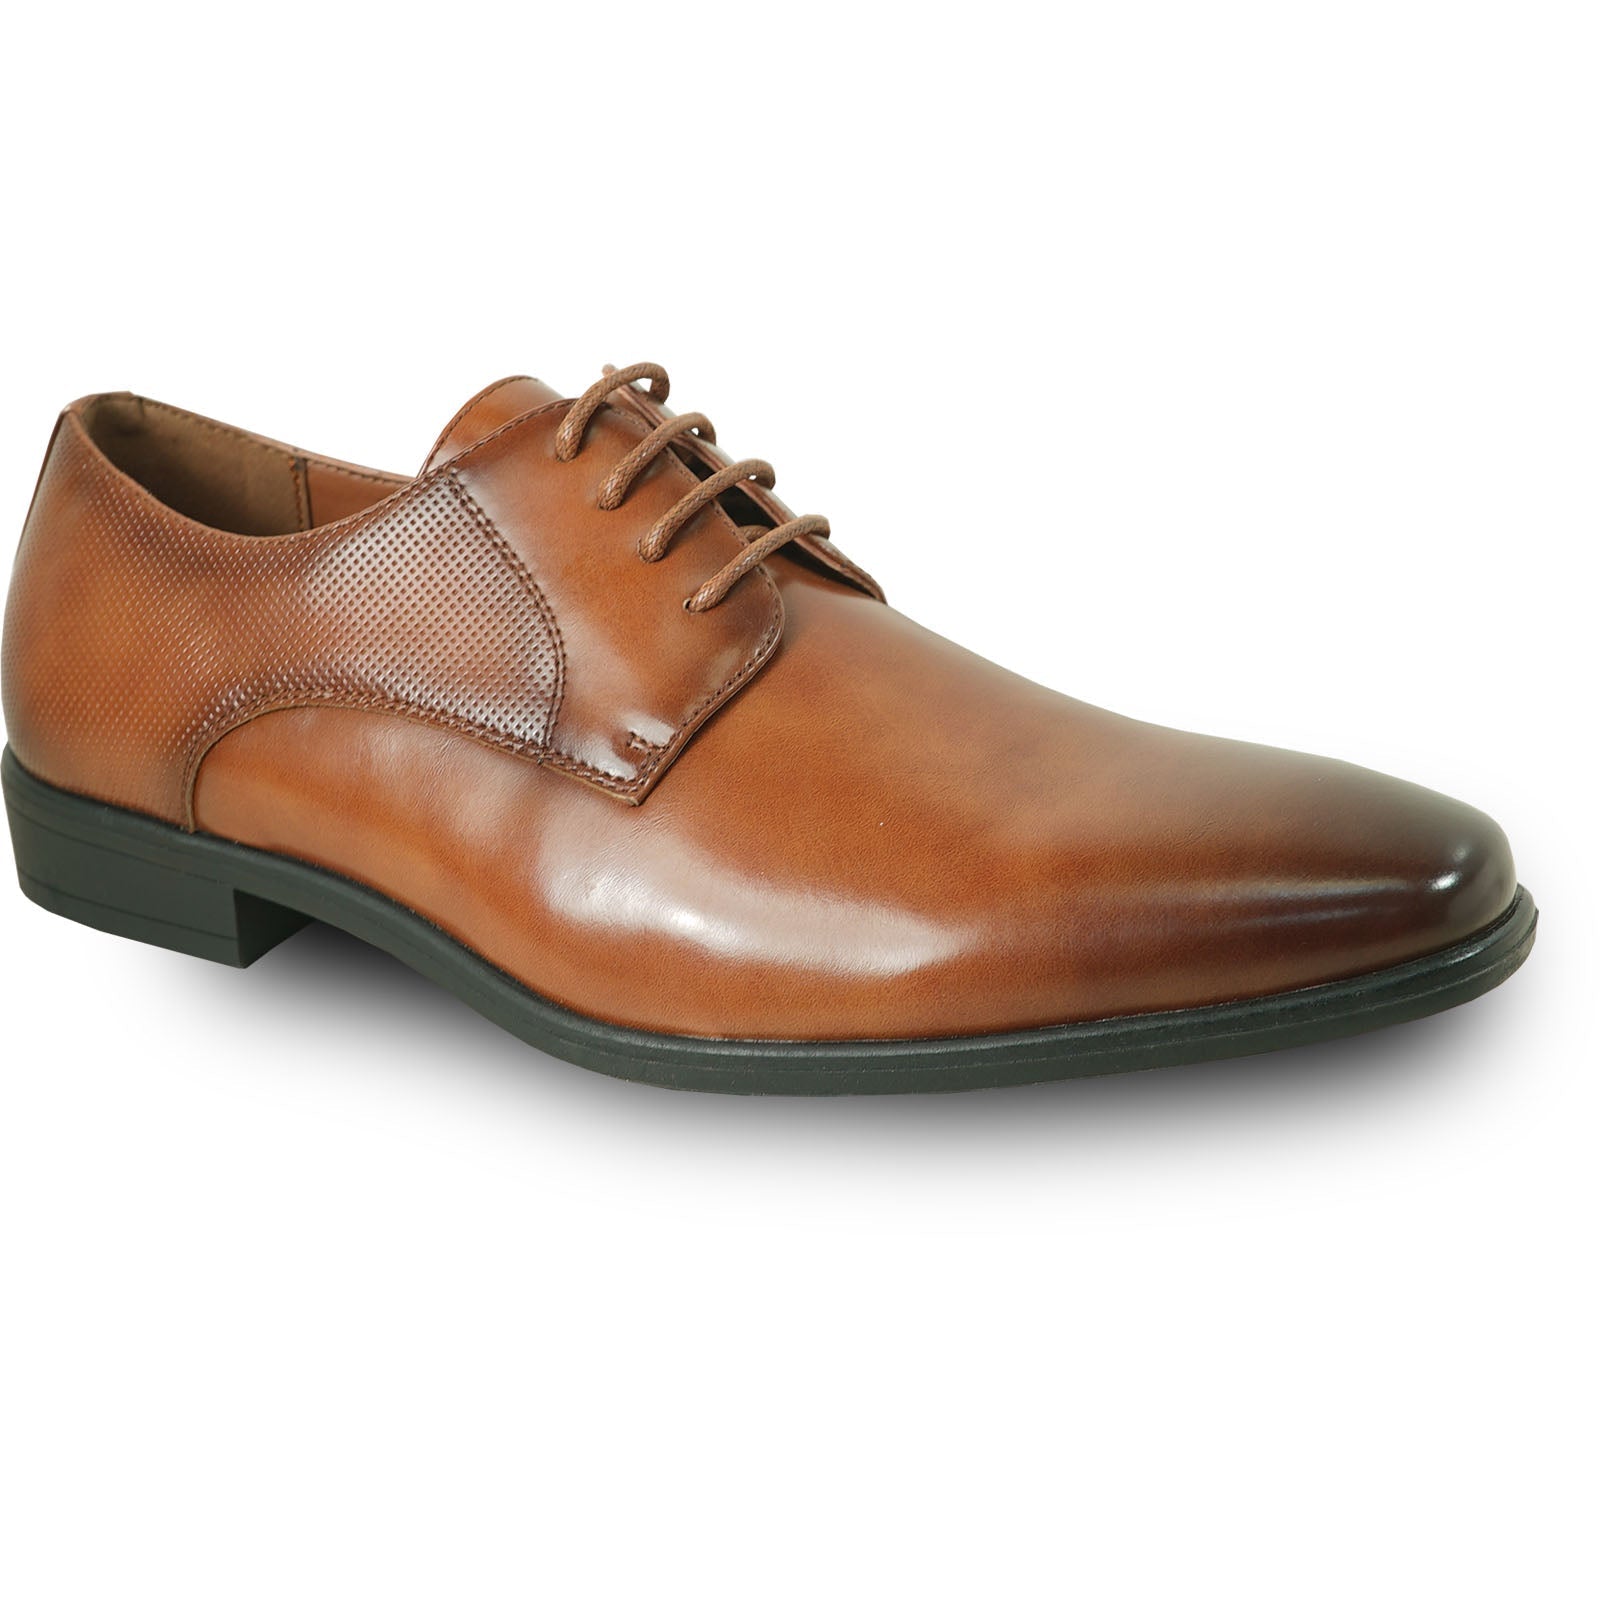 "Antique Plain Toe Oxford Men's Dress Shoe - Lace Up in Cognac"